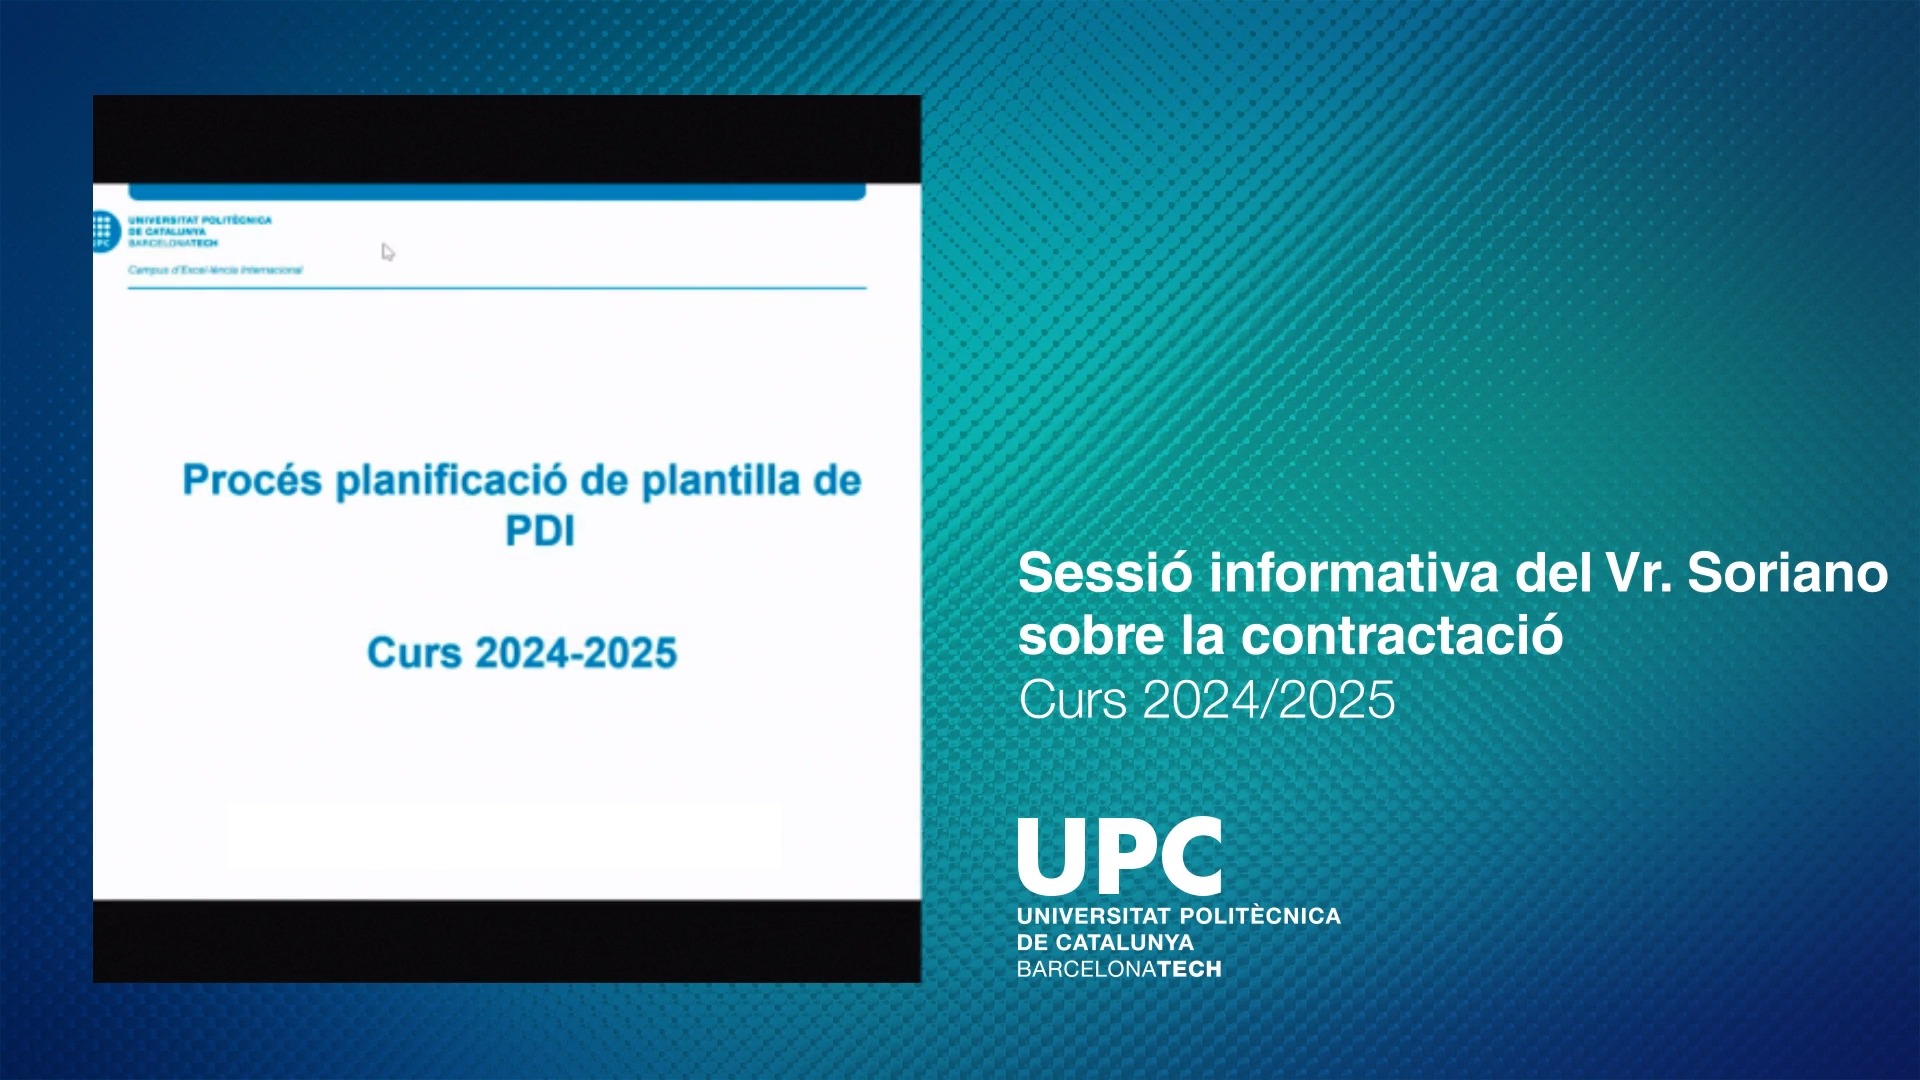 Sessió informativa del Vr Soriano sobre la contractació curs 2024-2025